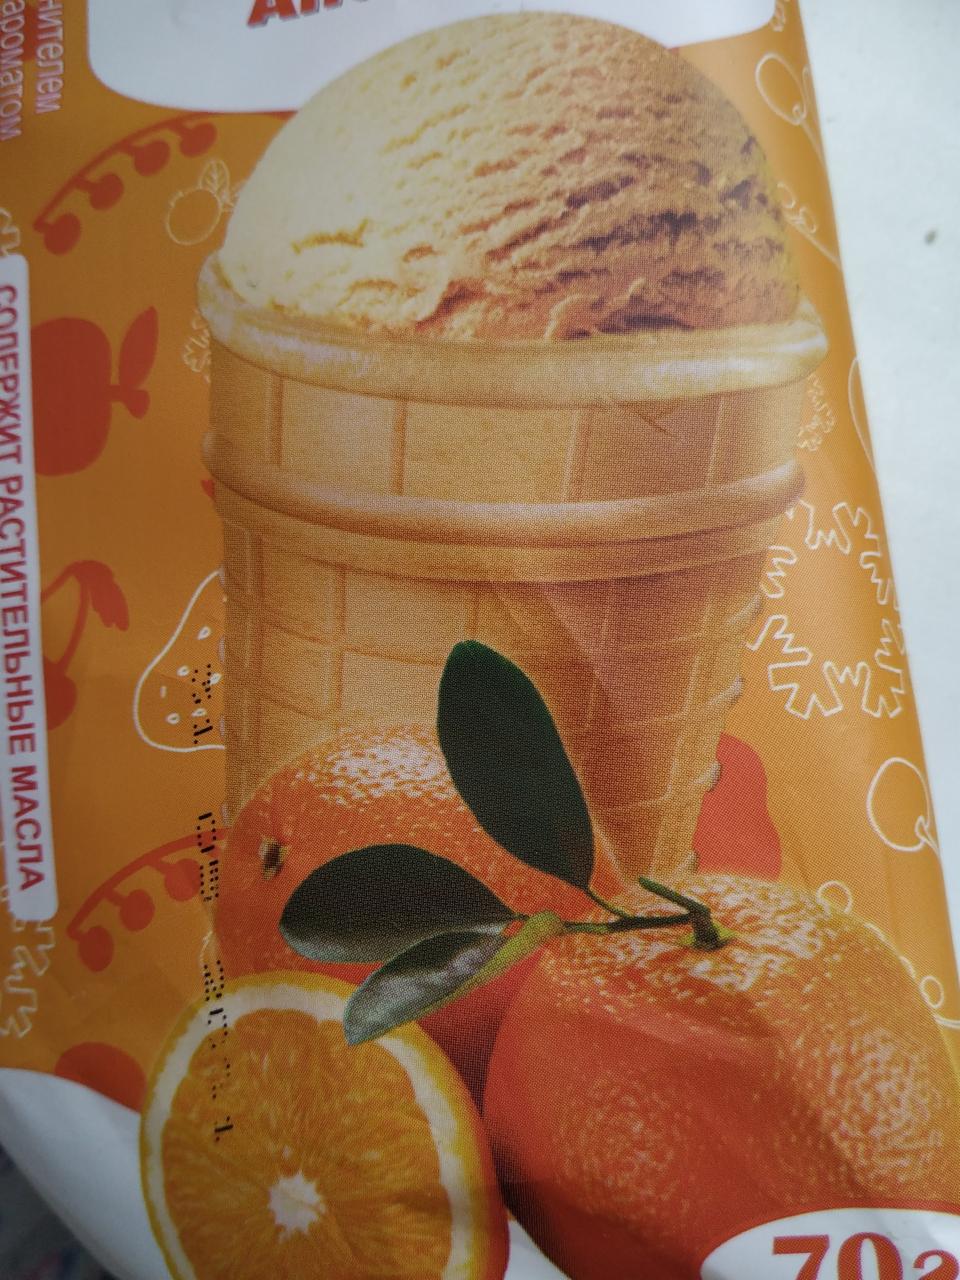 Фото - мороженое в стаканчике вкуса апельсин Океан